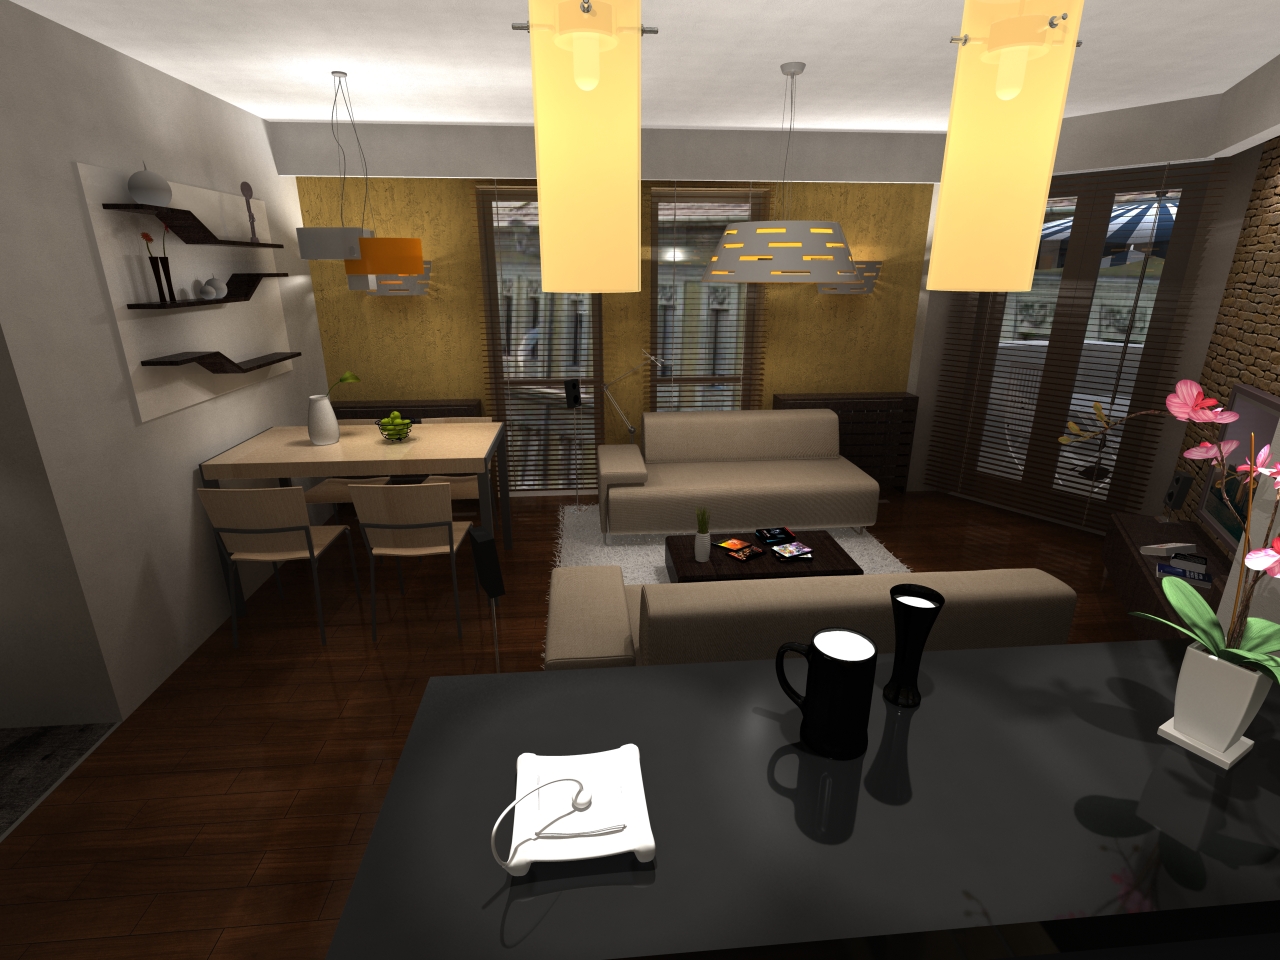 Nappali -étkező - látványterv / Dining - living room - visualization